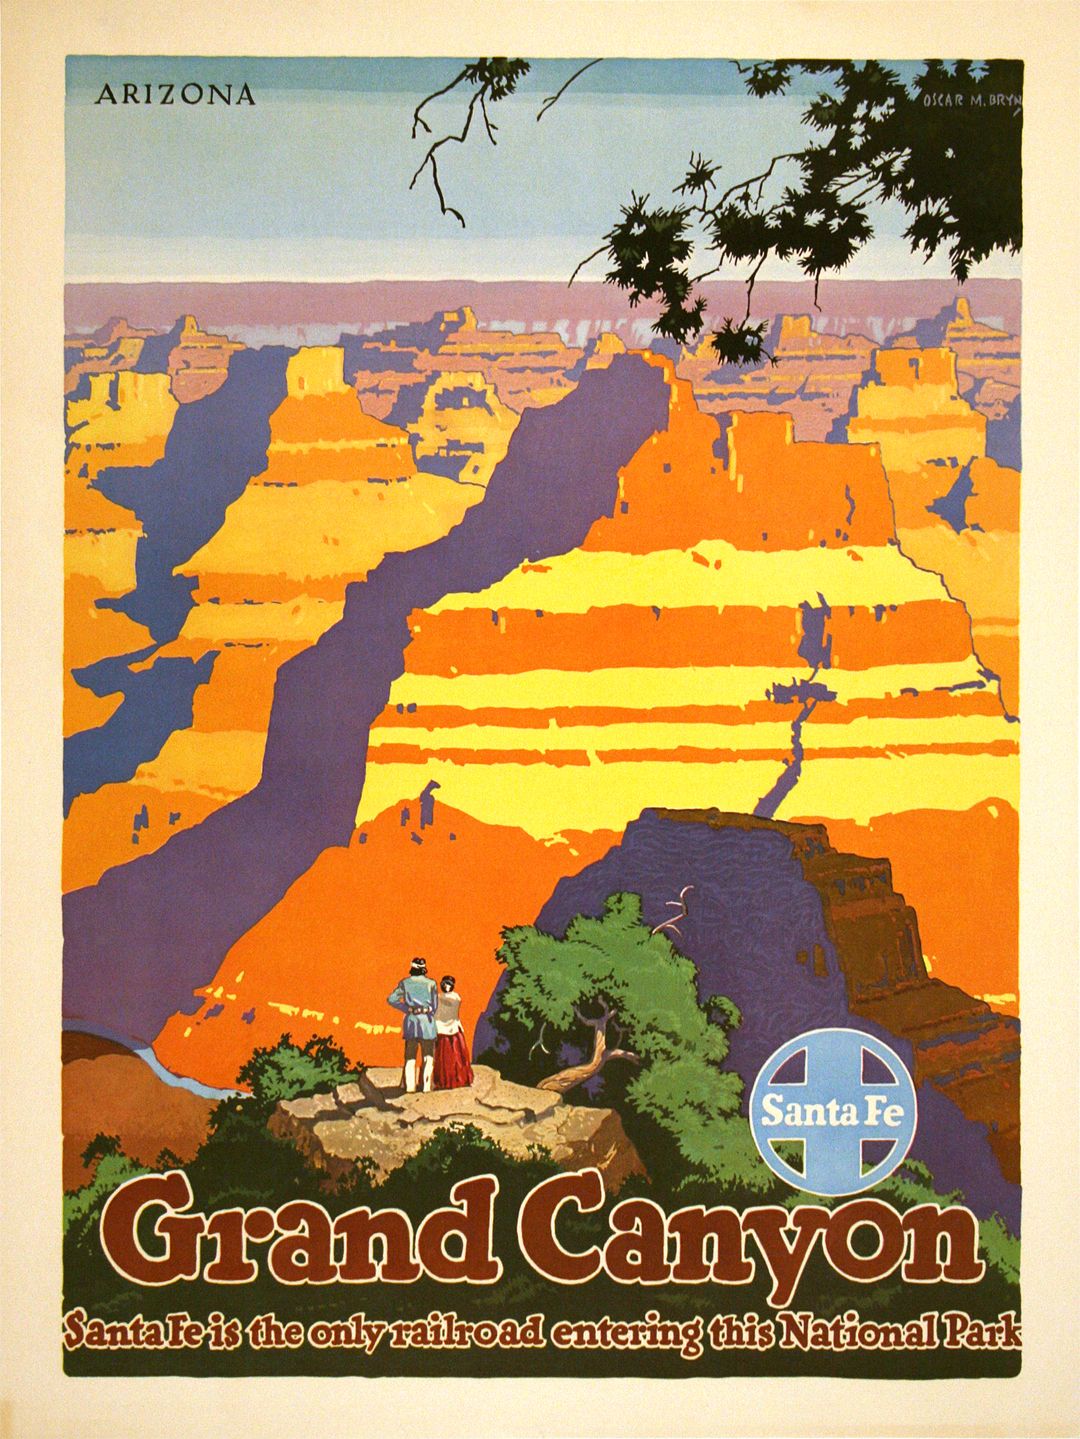 Original Santa Fe Railroad Poster - Grand Canyon 1949 by Oscar Bryn